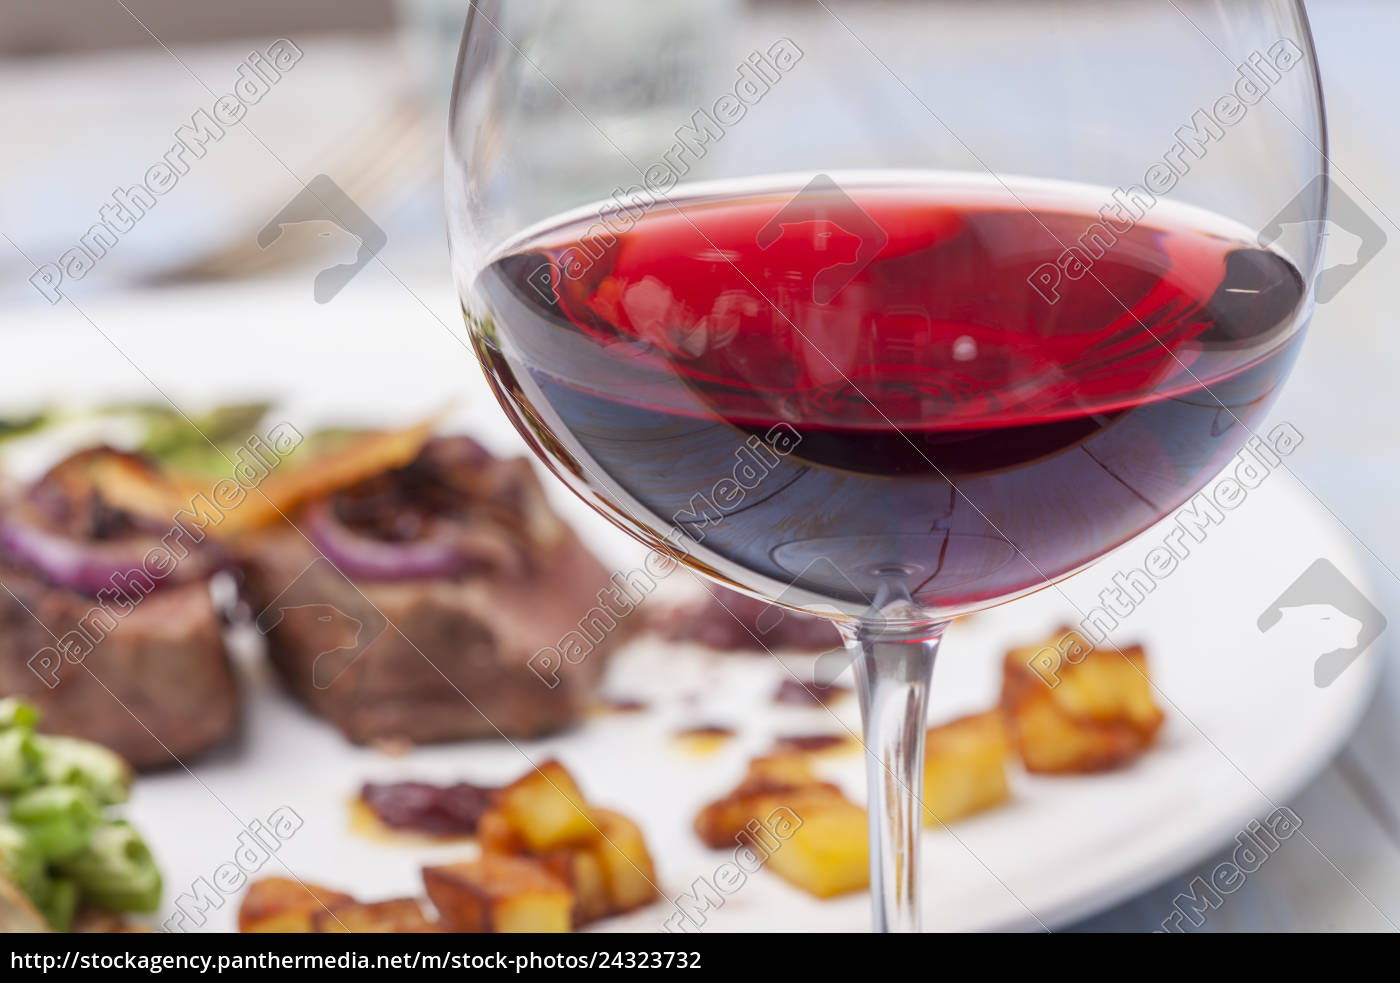 Rotwein und ein Steak - Lizenzfreies Foto - #24323732 | Bildagentur ...